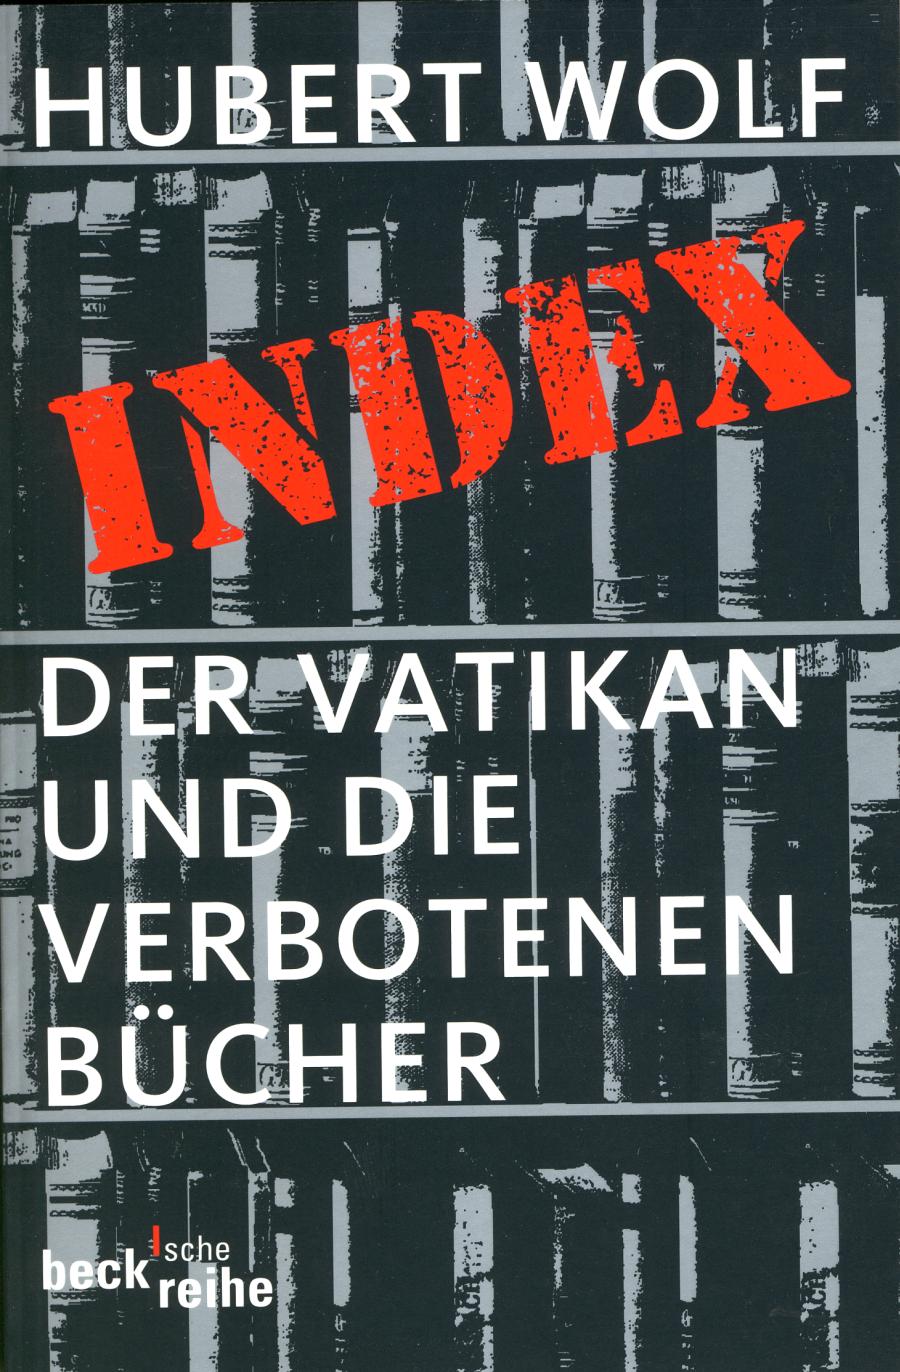 "Index"